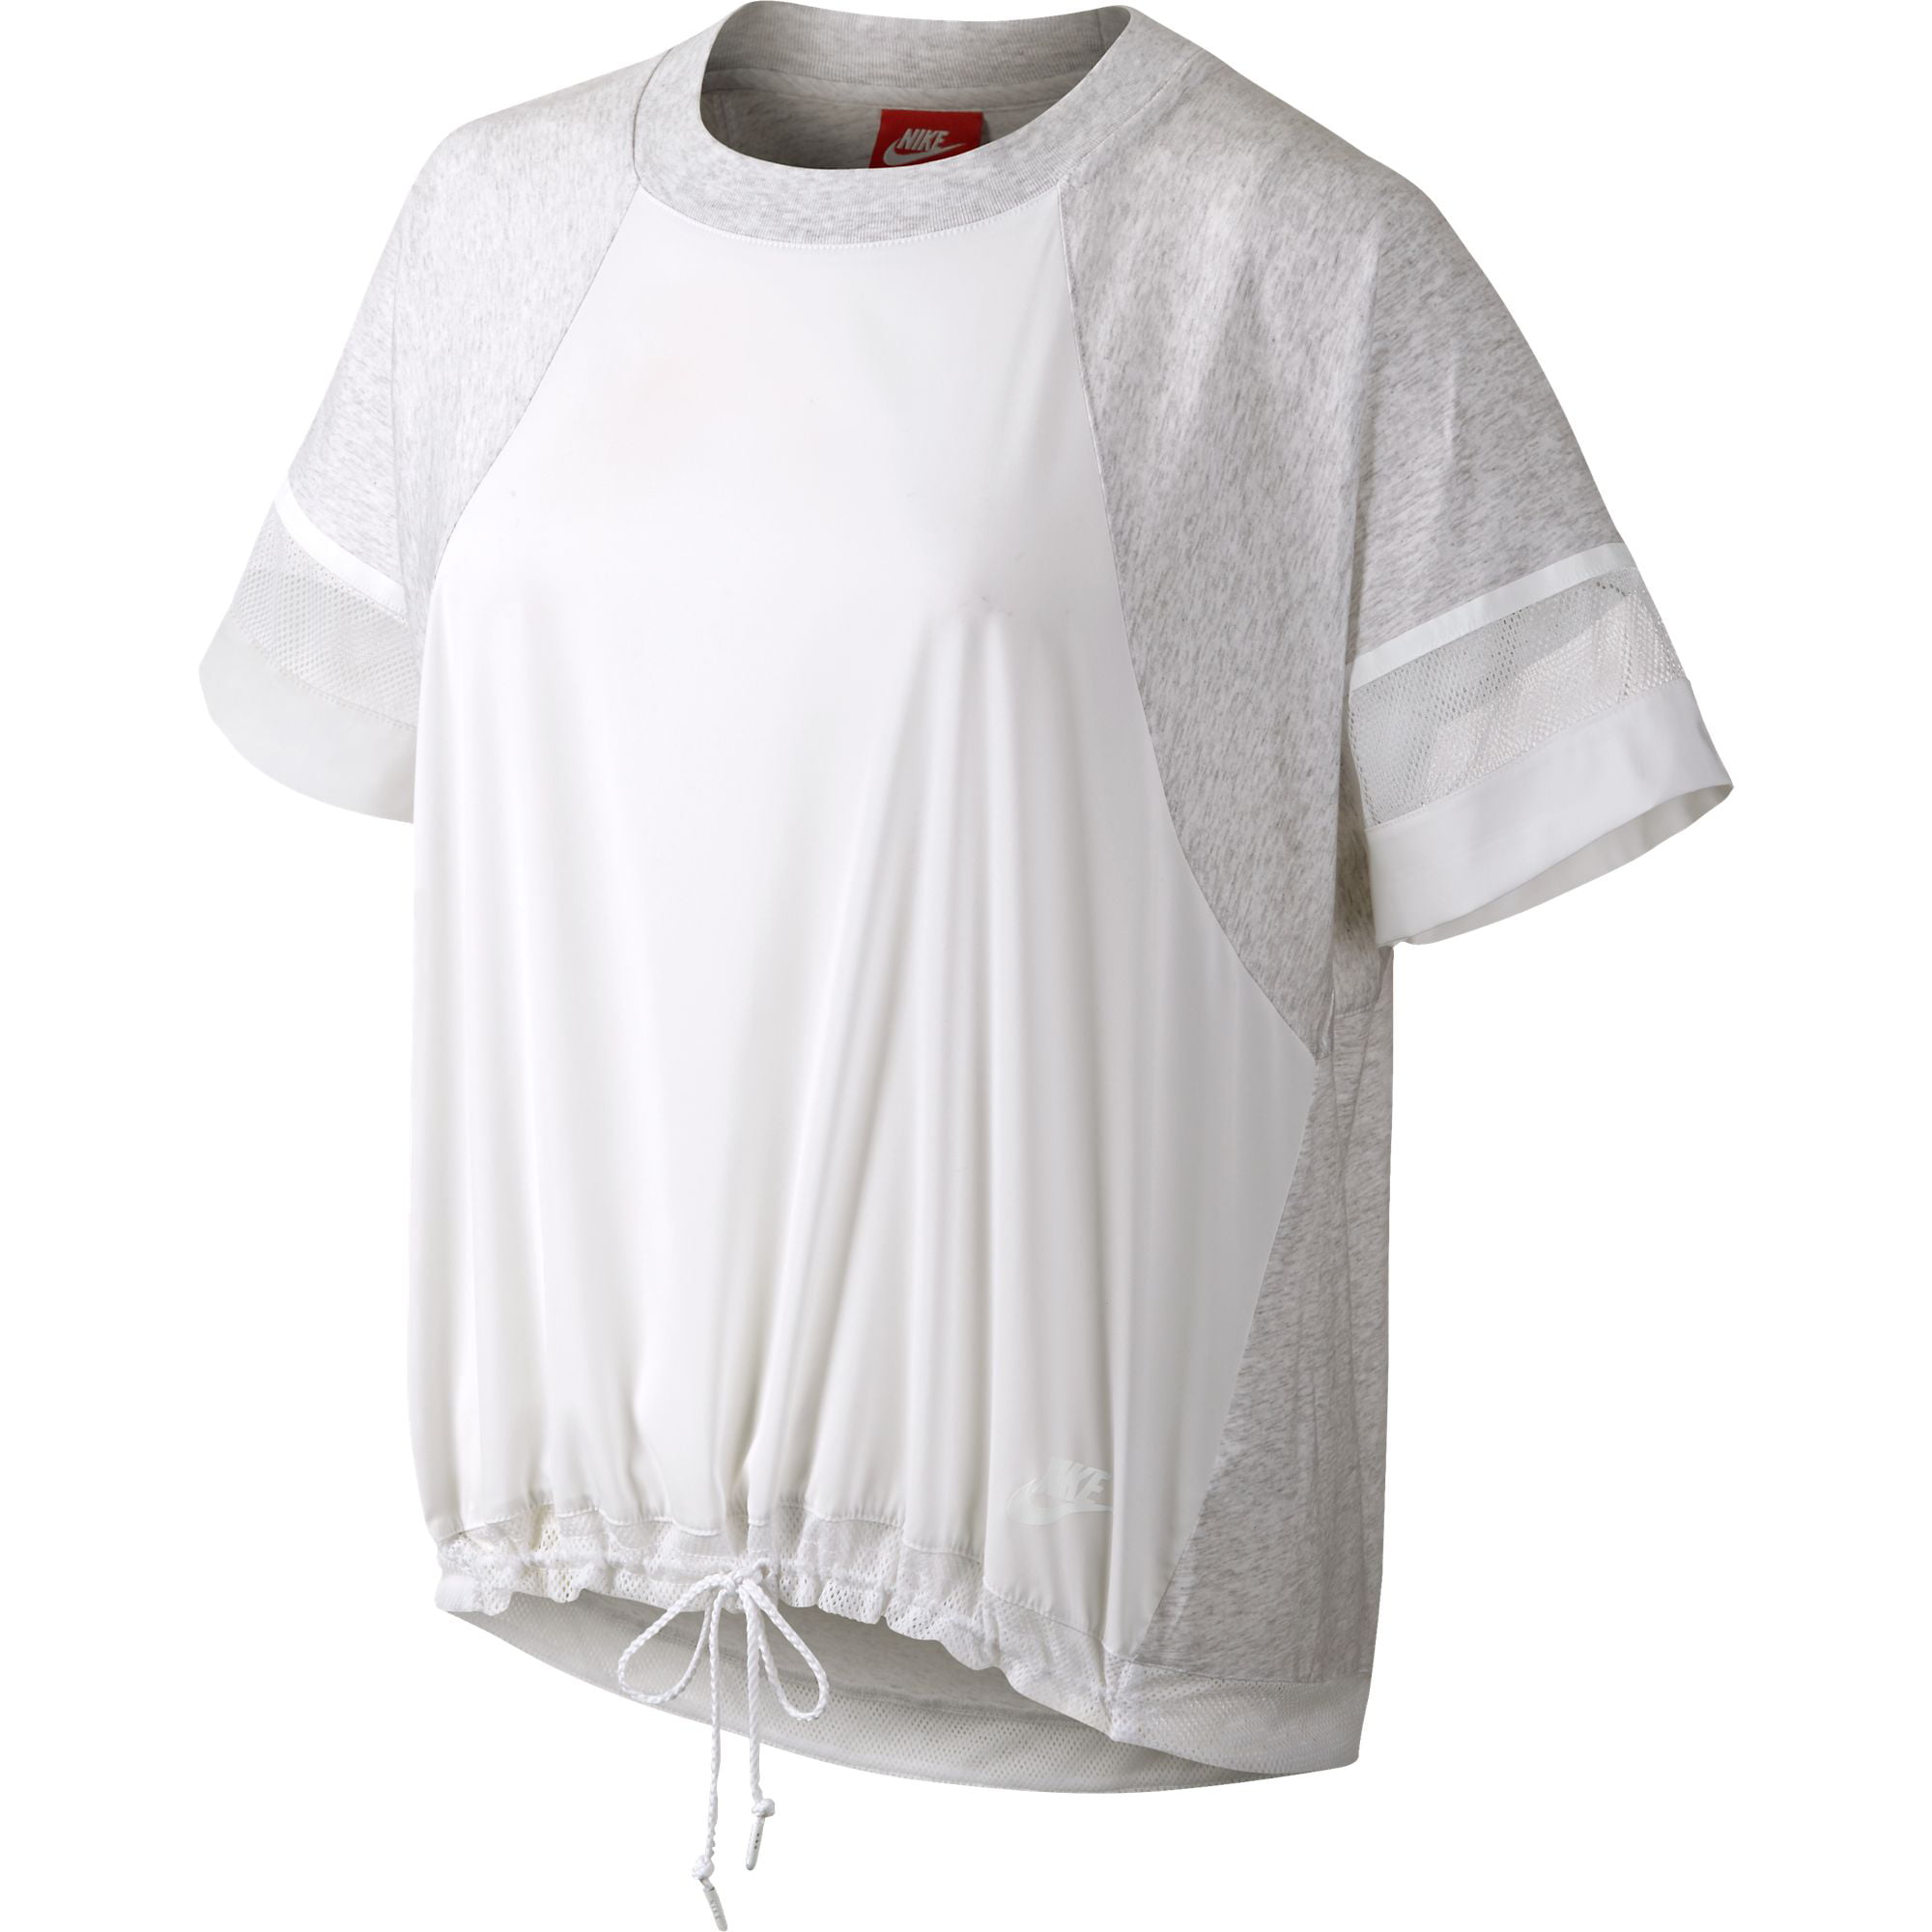 Shirt White/Birch Heather 726019-051 